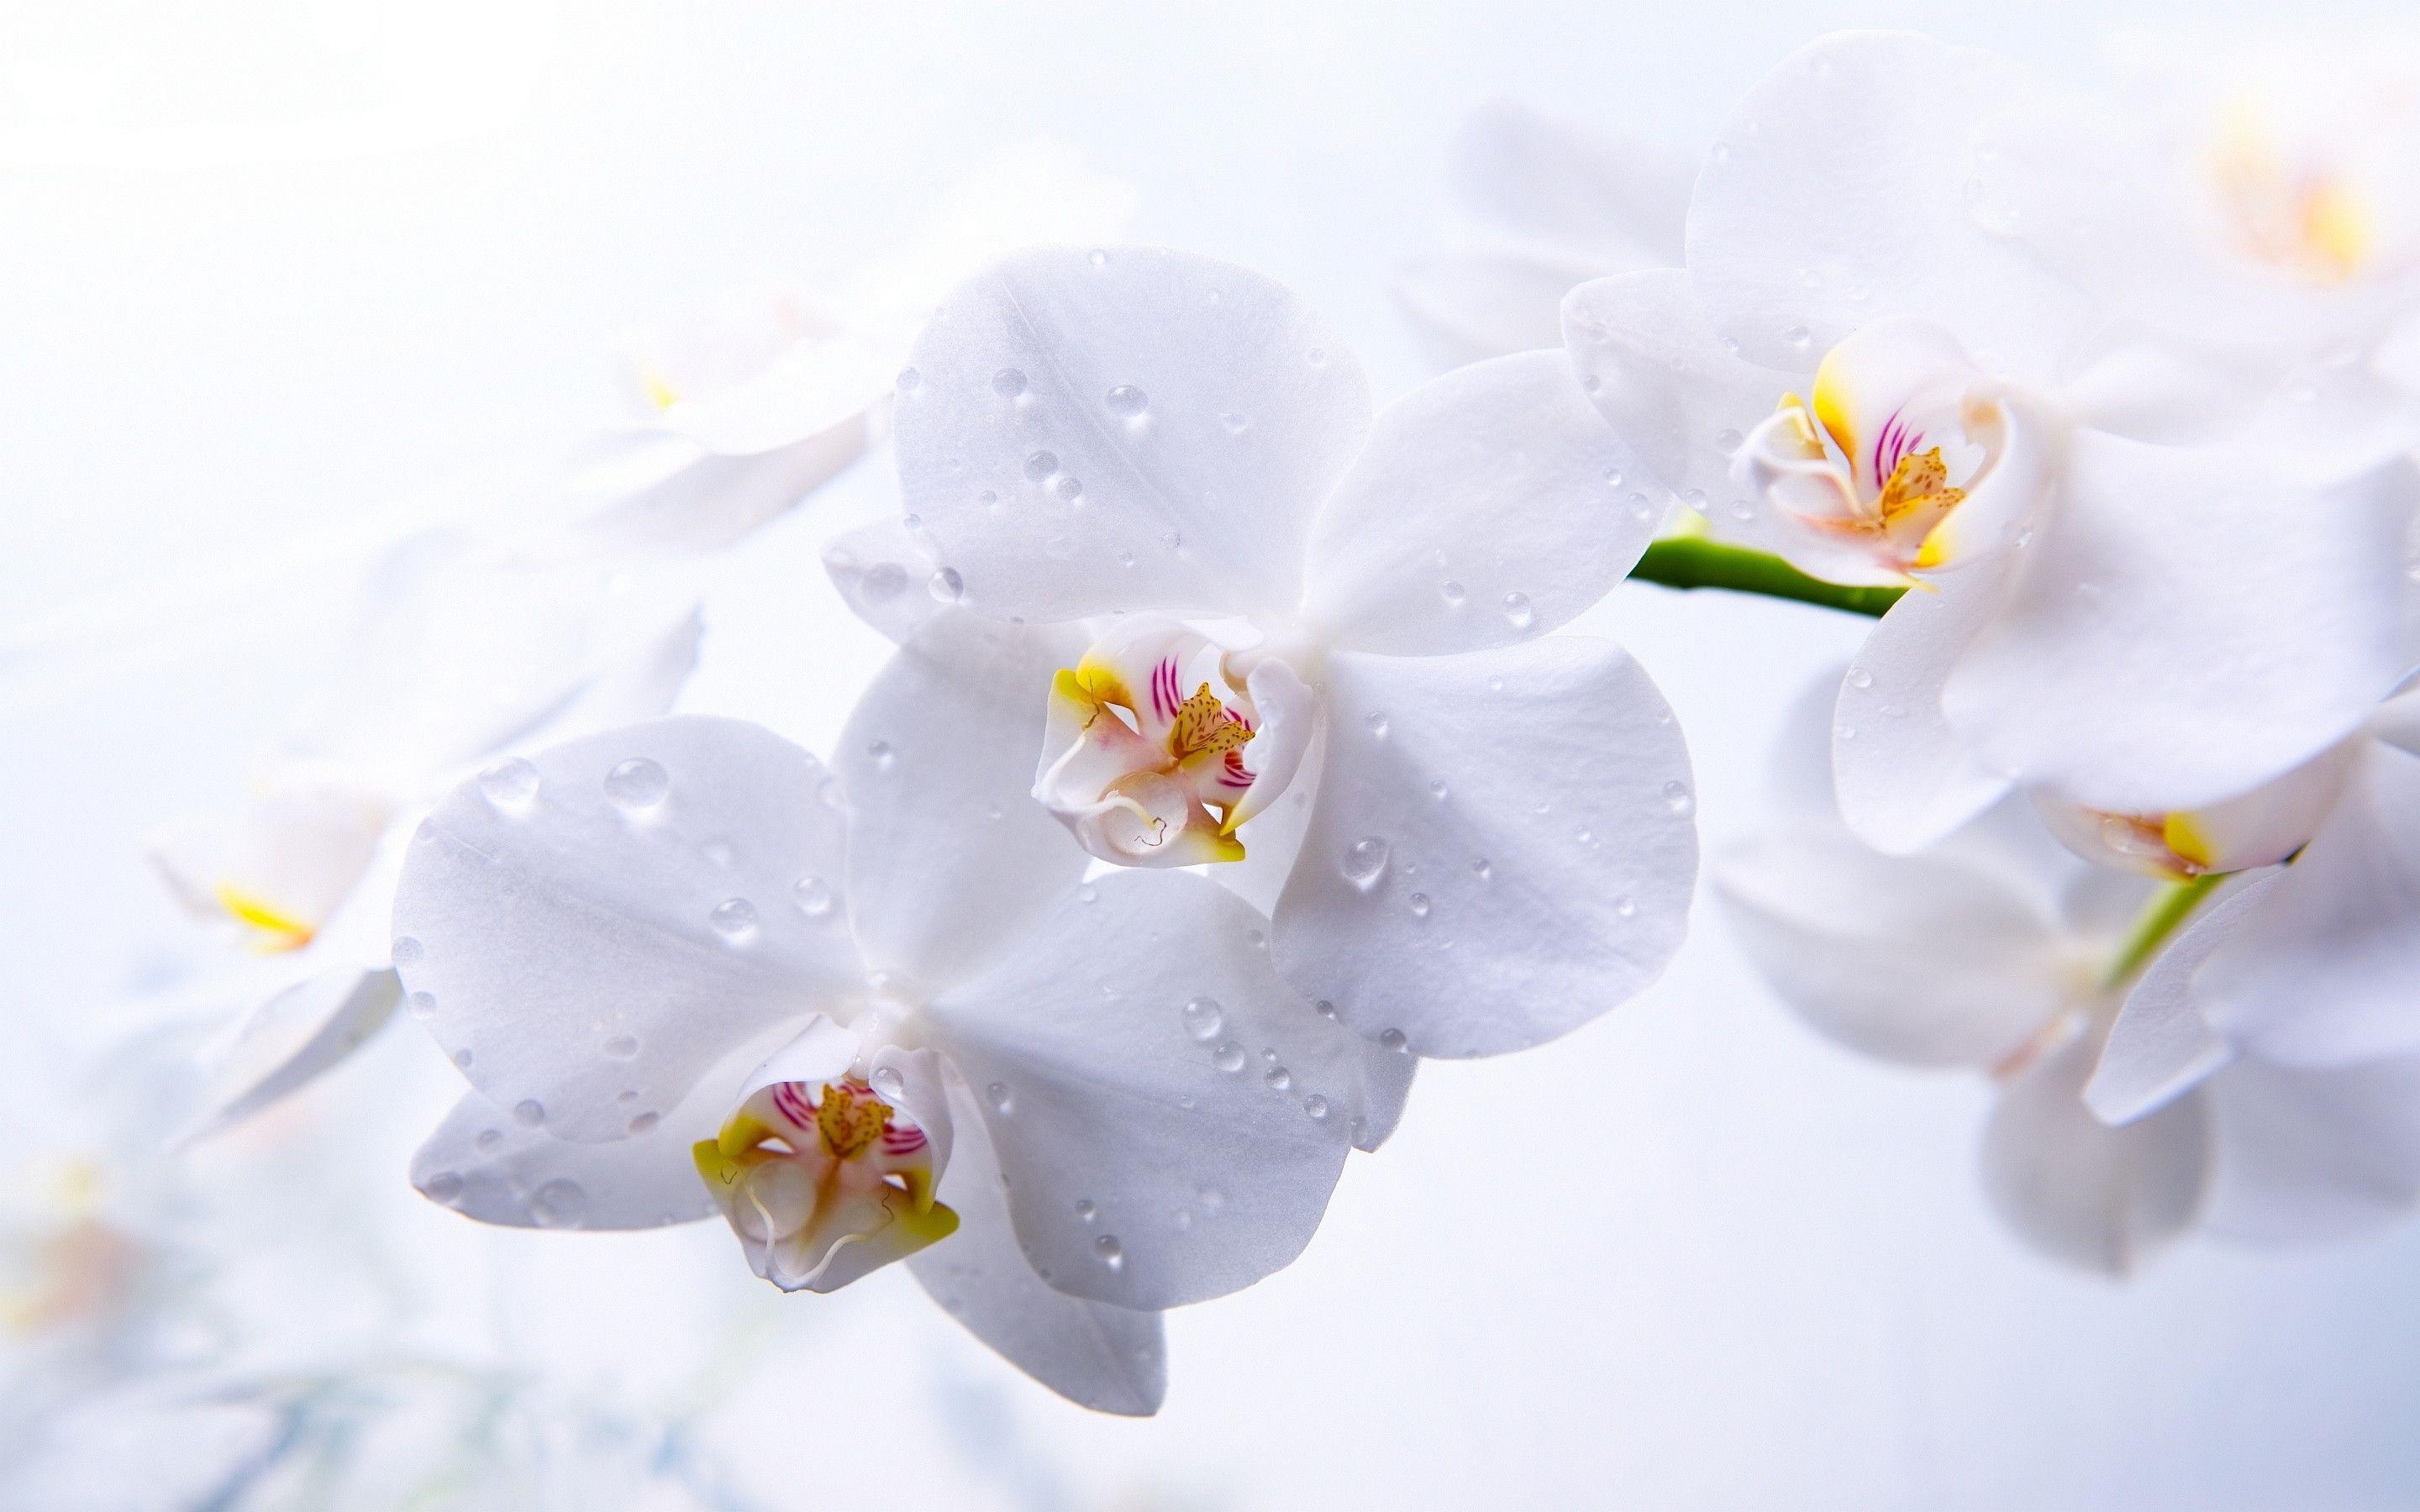 Hình nền hoa lan là sự lựa chọn tuyệt vời để trang trí màn hình của bạn. Hoa lan thường được dùng để biểu thị sự sang trọng và thanh lịch và được yêu thích vì sắc hoa đẹp và hương thơm tinh tế. Và khi sử dụng những hình ảnh về hoa lan làm hình nền thì màn hình của bạn được thể hiện với sự tươi mới và tinh tế.